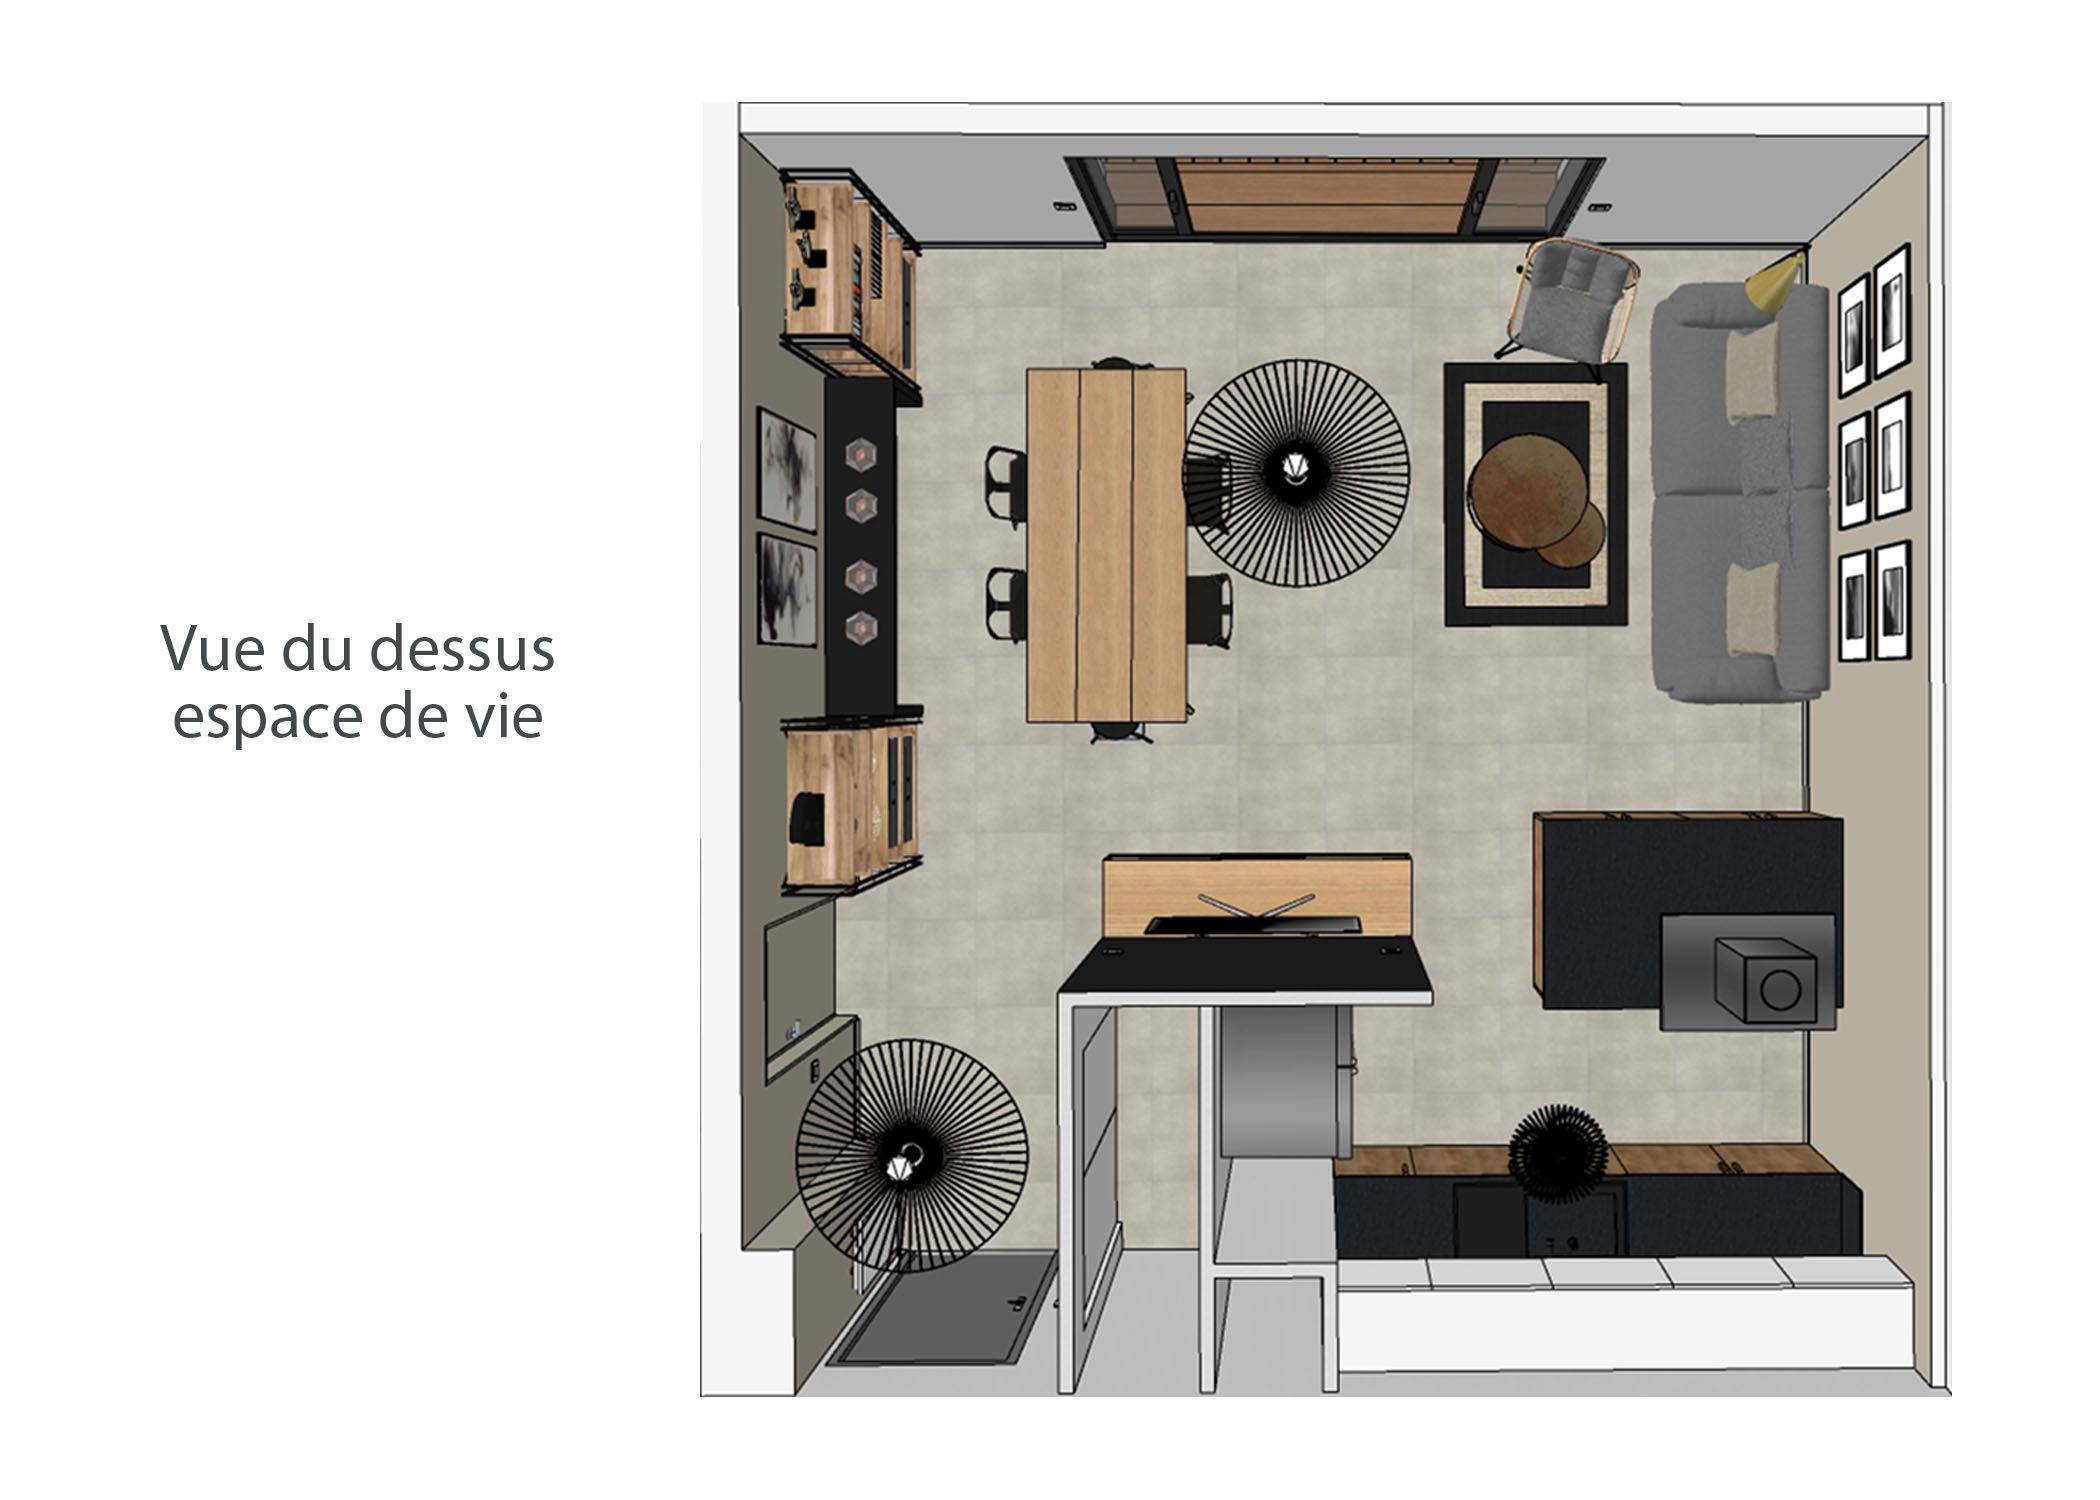 decoration-terrasse et chambre-vue du dessus espace de vie-aix-en-provence-dekho design